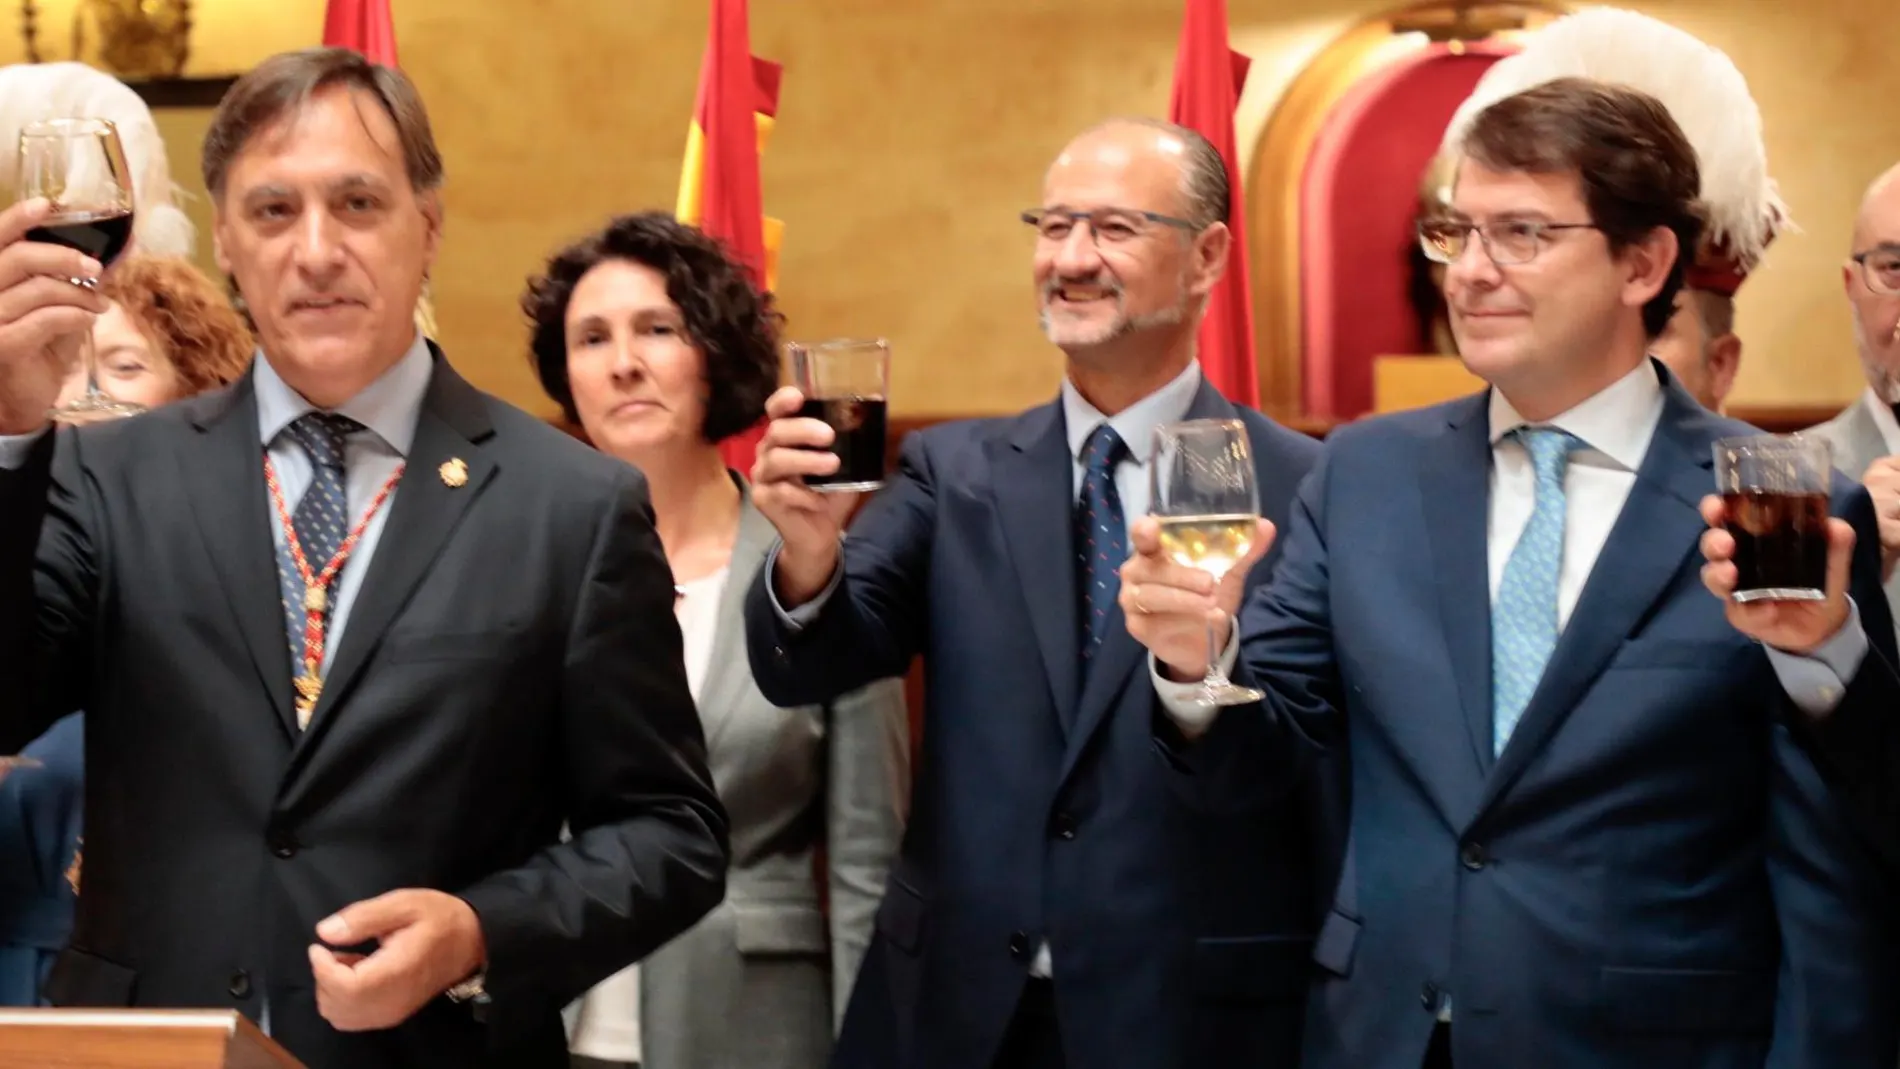 Fernández Mañueco, Luis Fuentes y García Carbayo brindan por la patrona de Salamanca